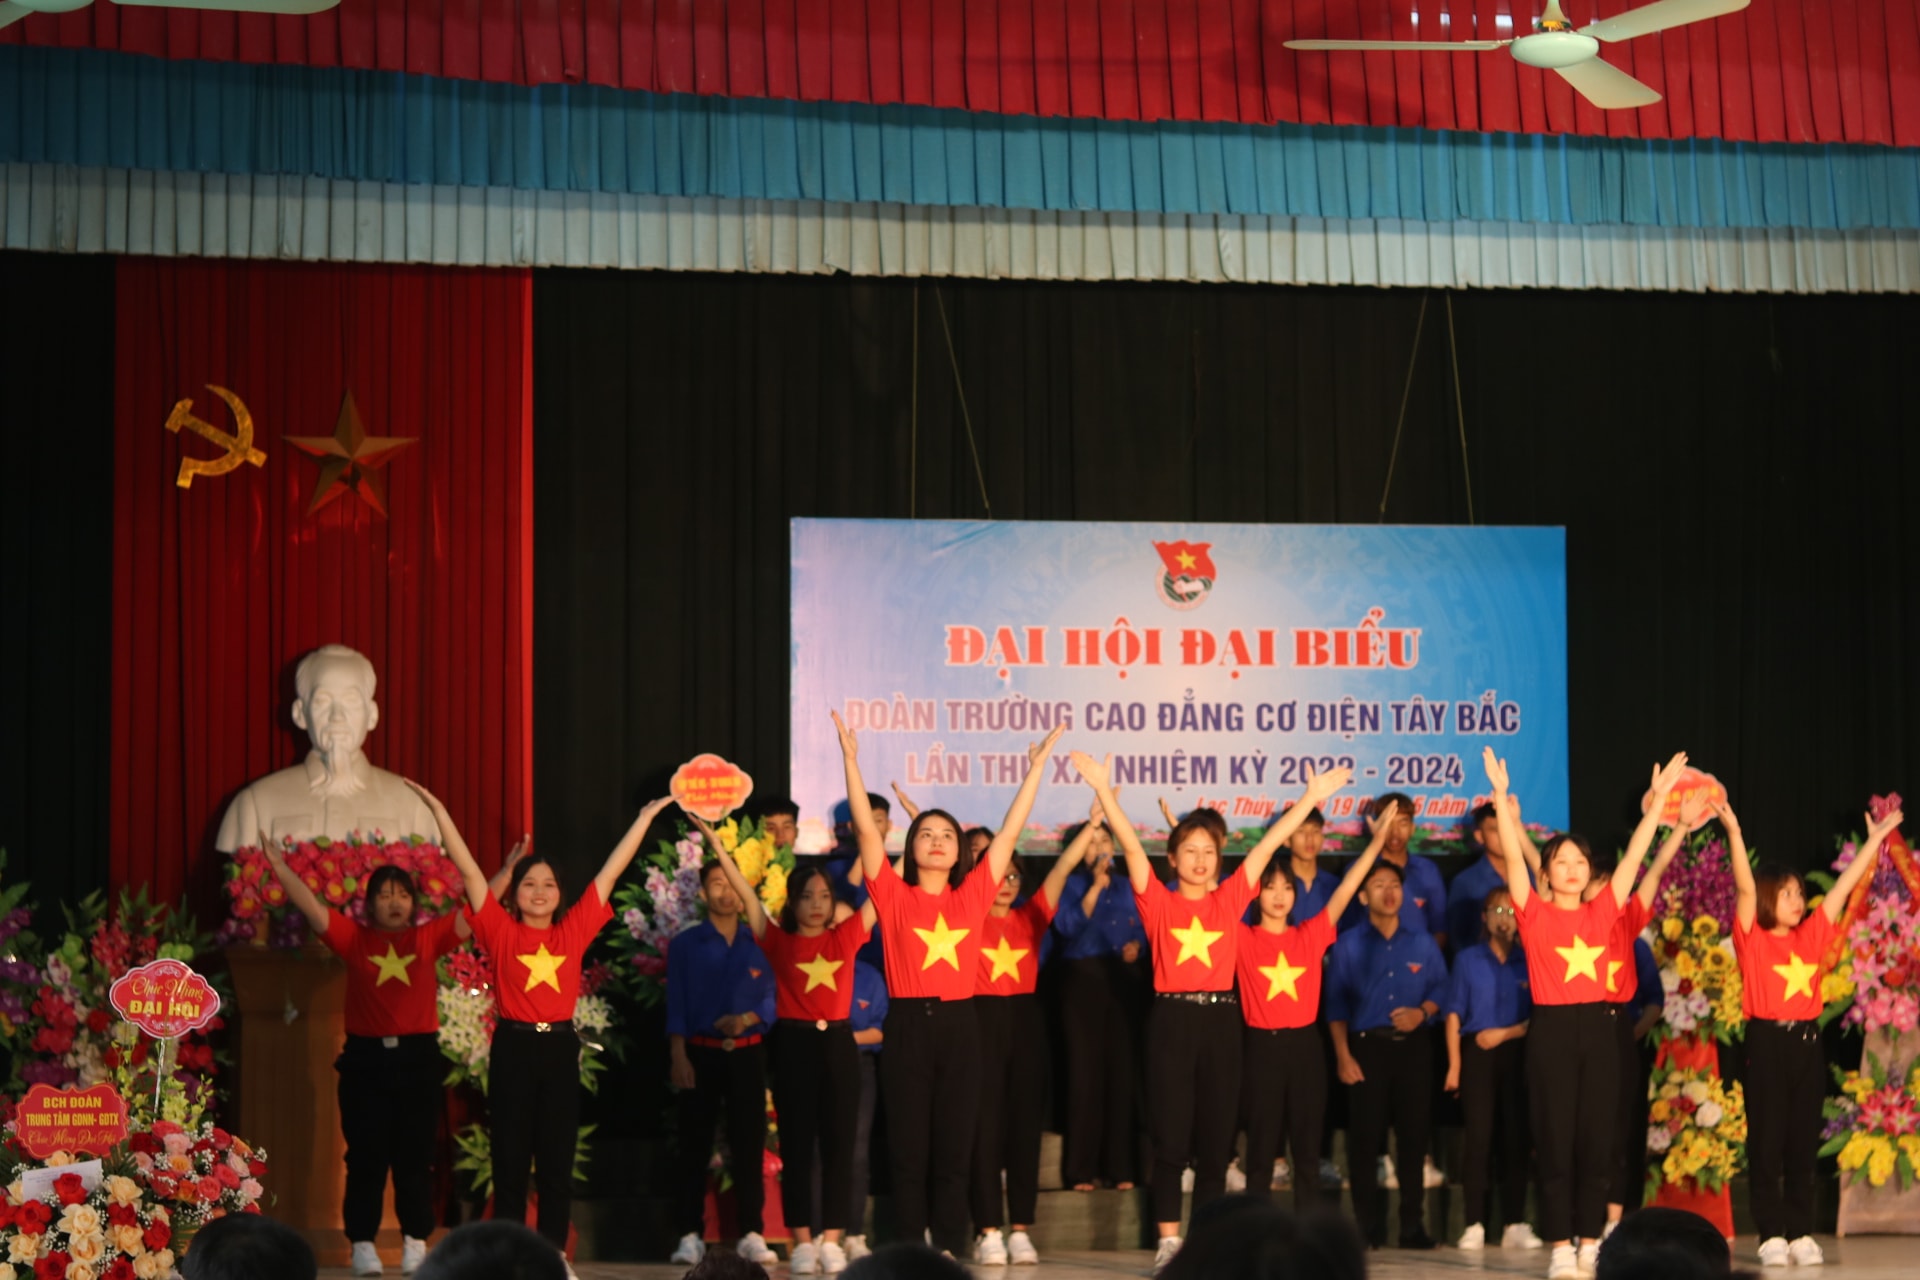 Đại hội Đại biểu Đoàn TNCS Hồ Chí Minh chơi bài miễn phí
 lần thứ XX, nhiệm kỳ 2022 – 2024.